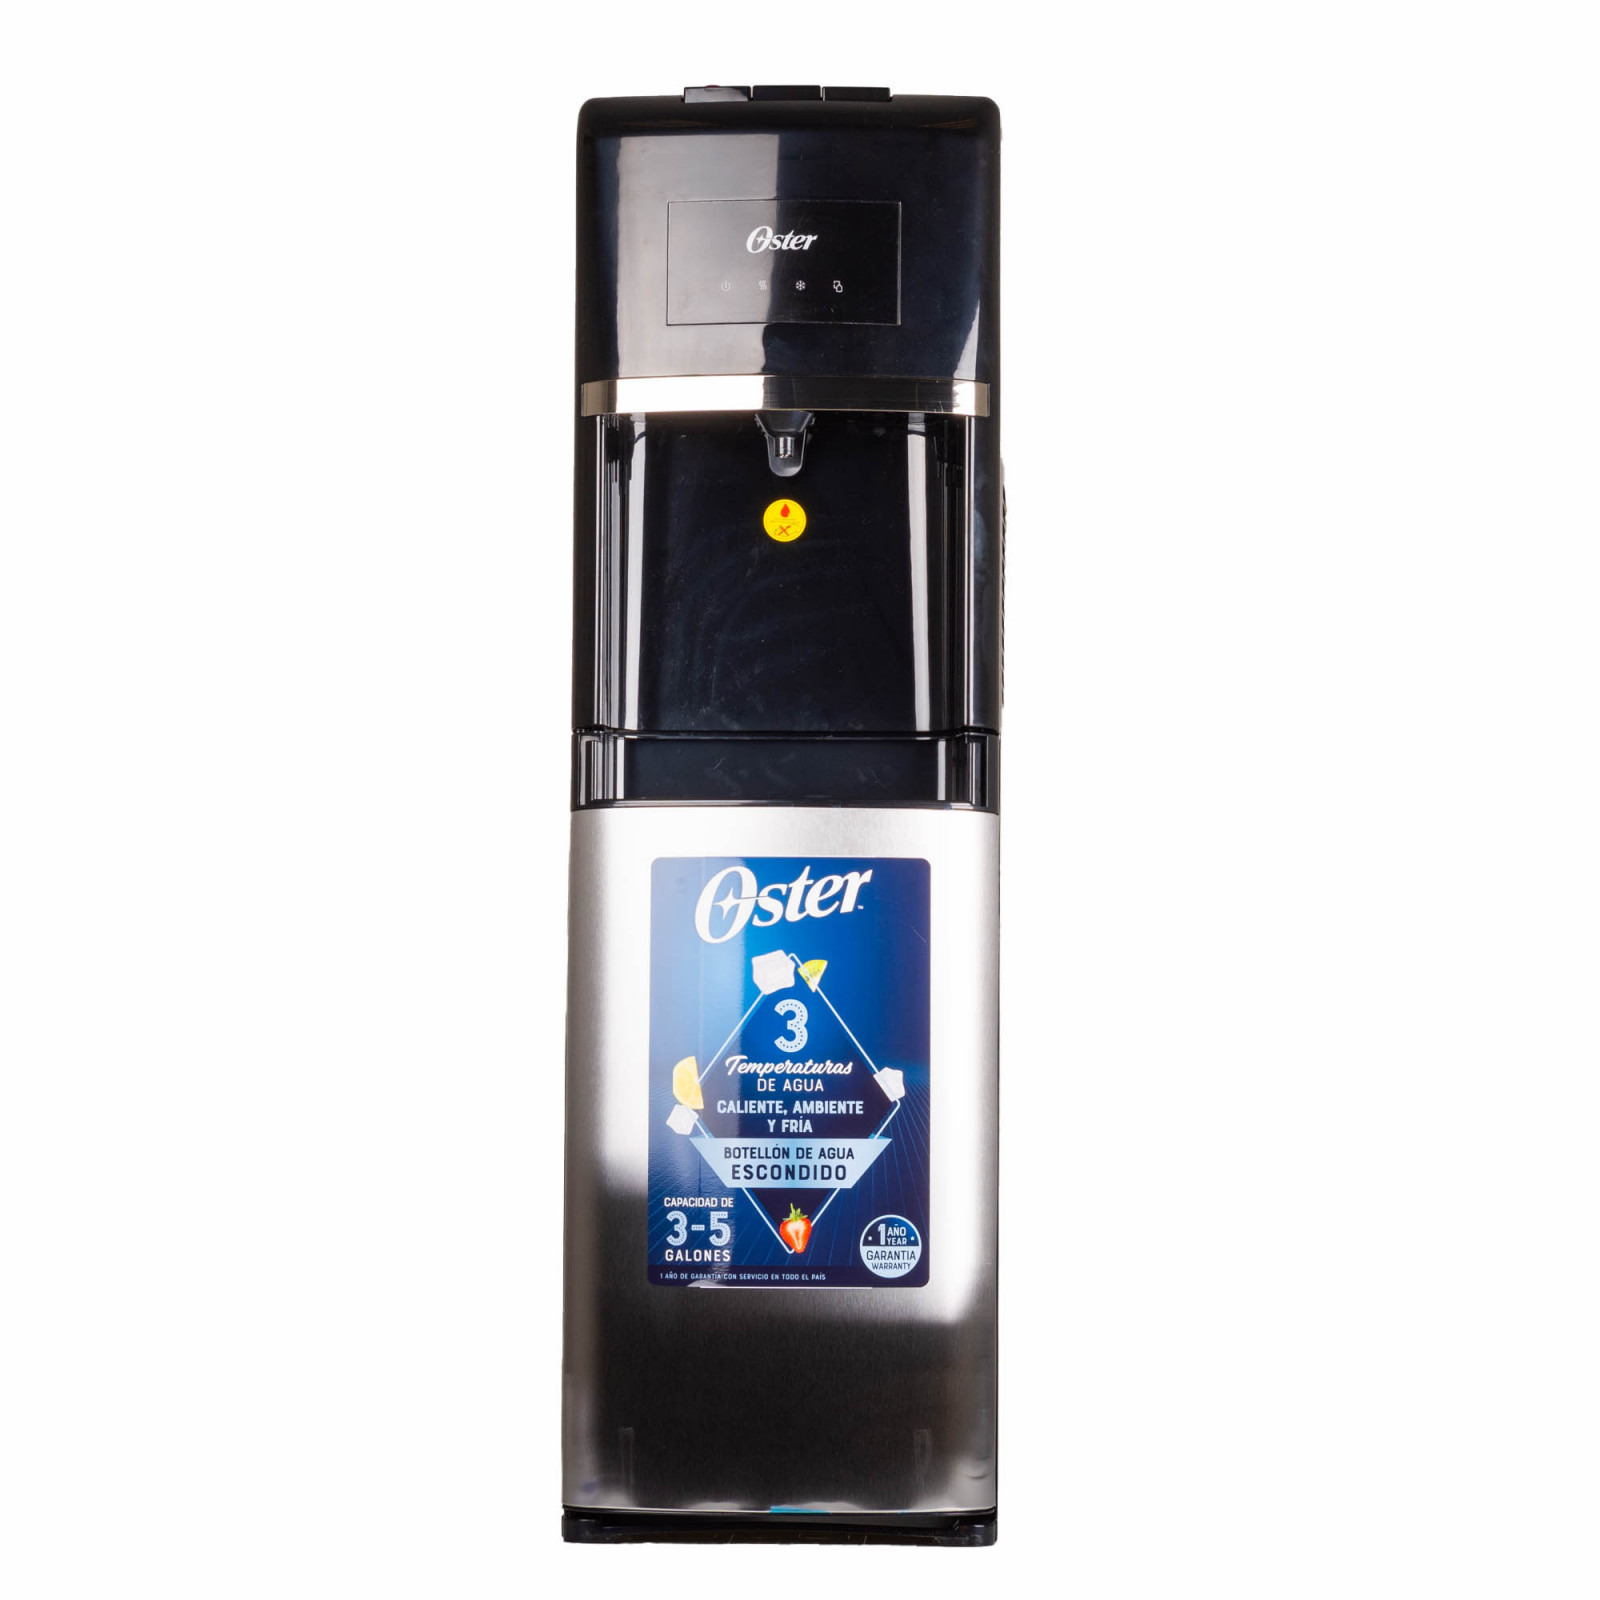 Comprar Extractor de jugos Black and Decker contiene jarra de plástico -1L